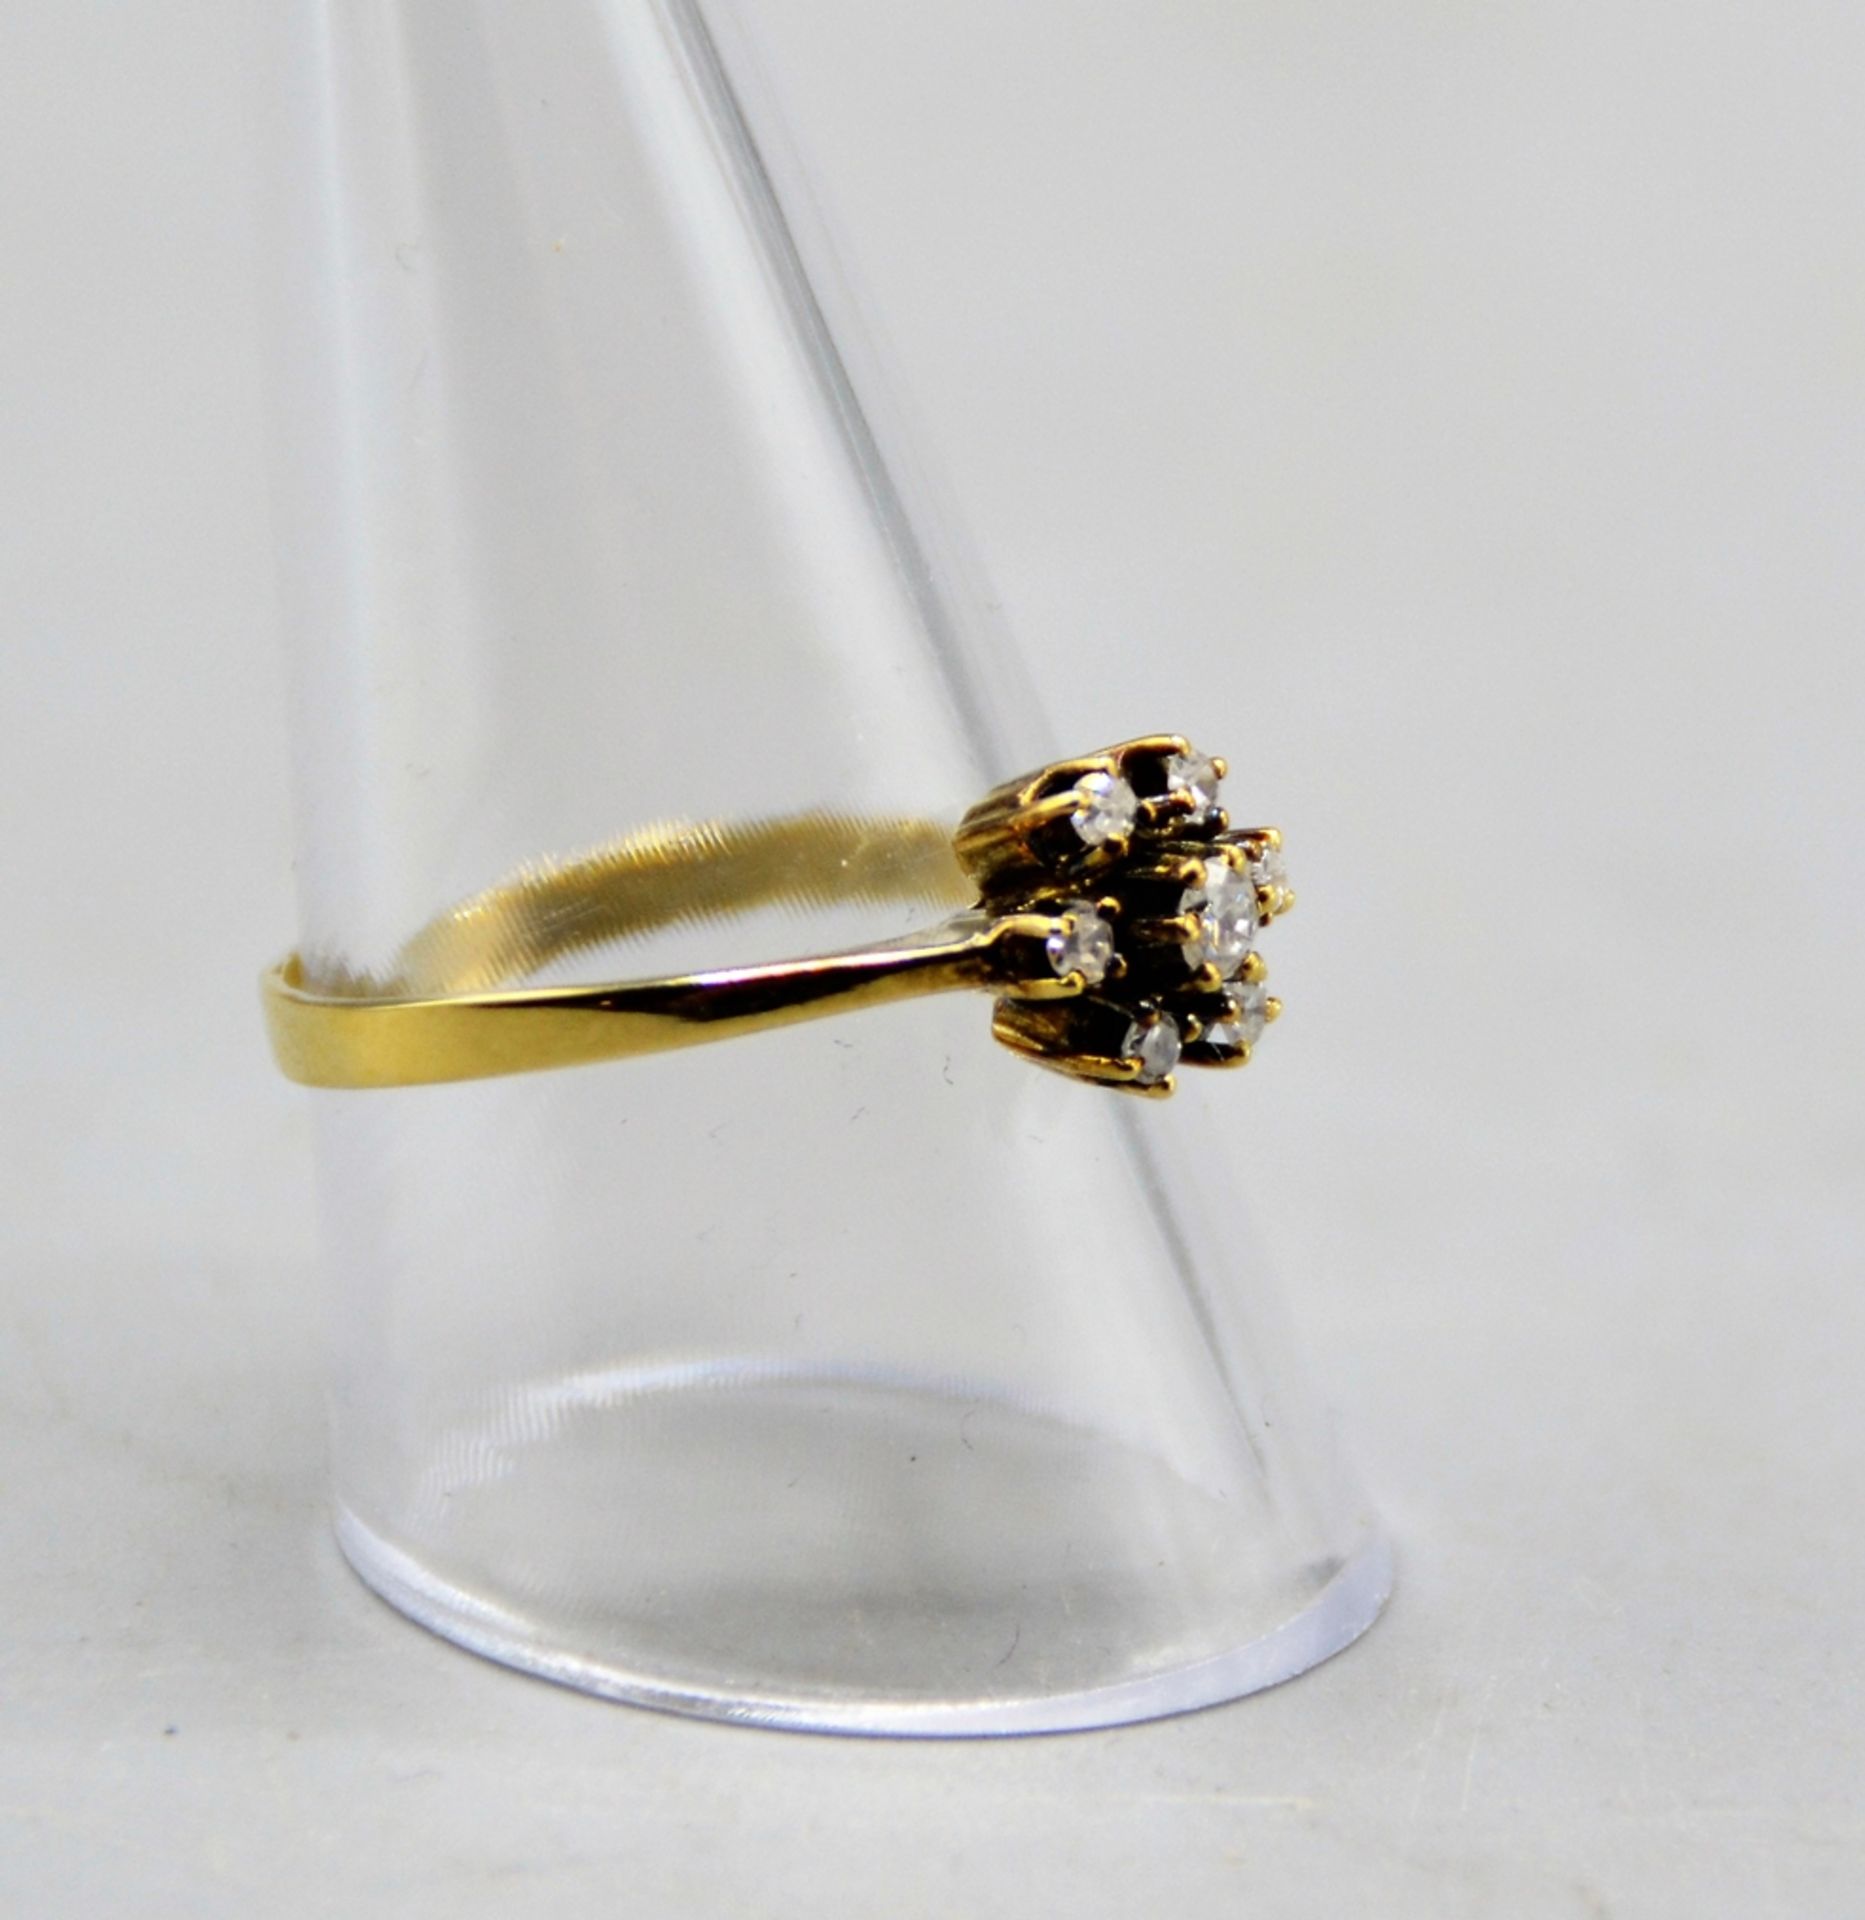 Diamantring Damenring mit 7 Diamanten 585 Gold, zus. ca. 0,3 ct., Ø 19 mm, 2,5 g - Bild 2 aus 3